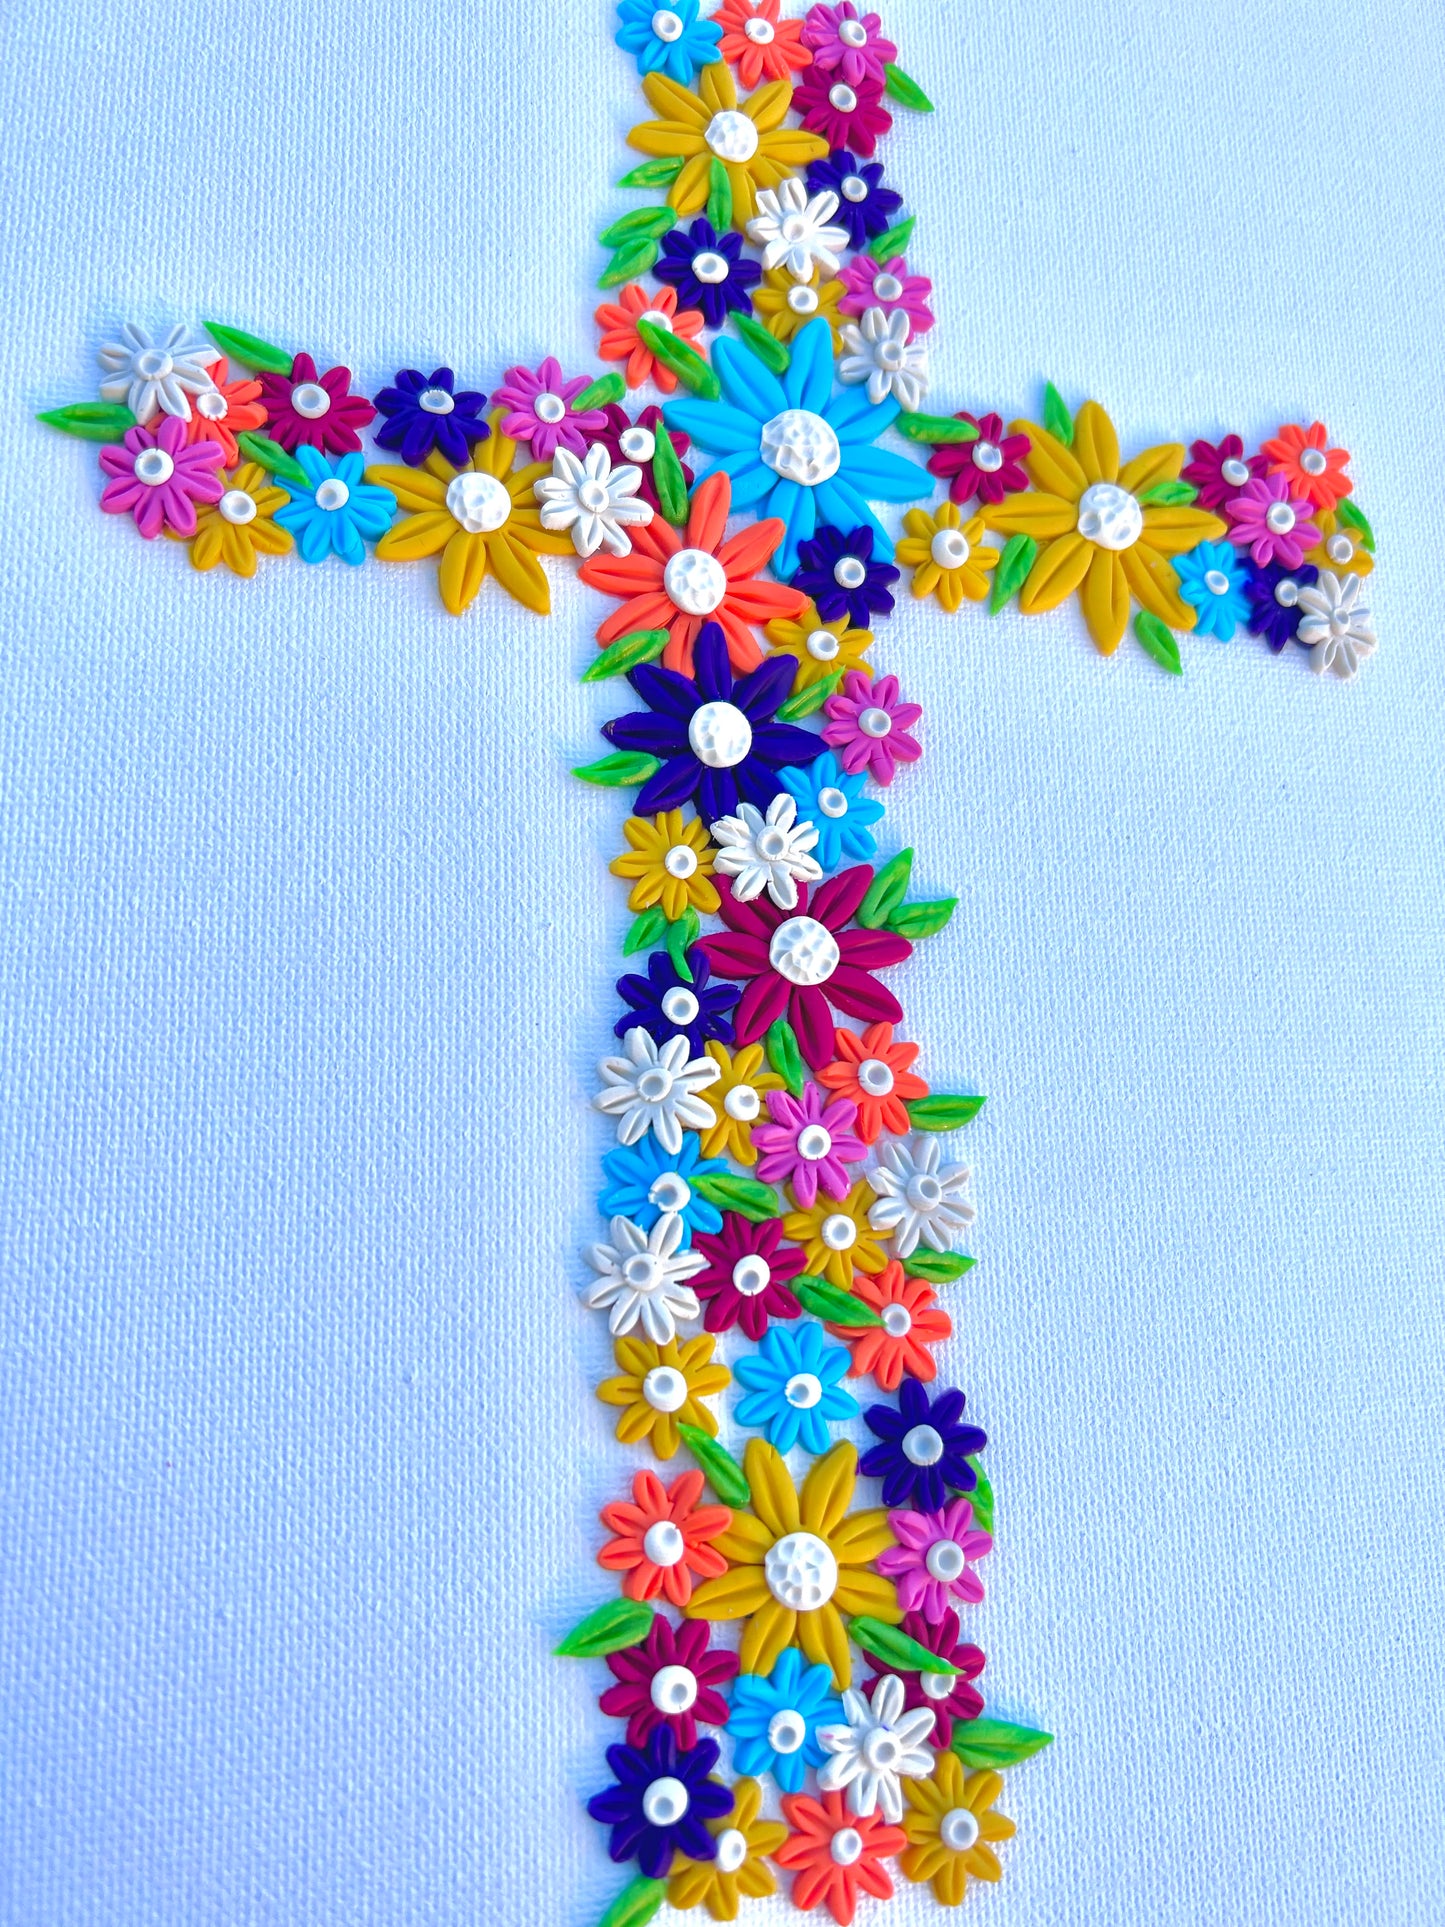 !NEW! Rainbow daisy cross